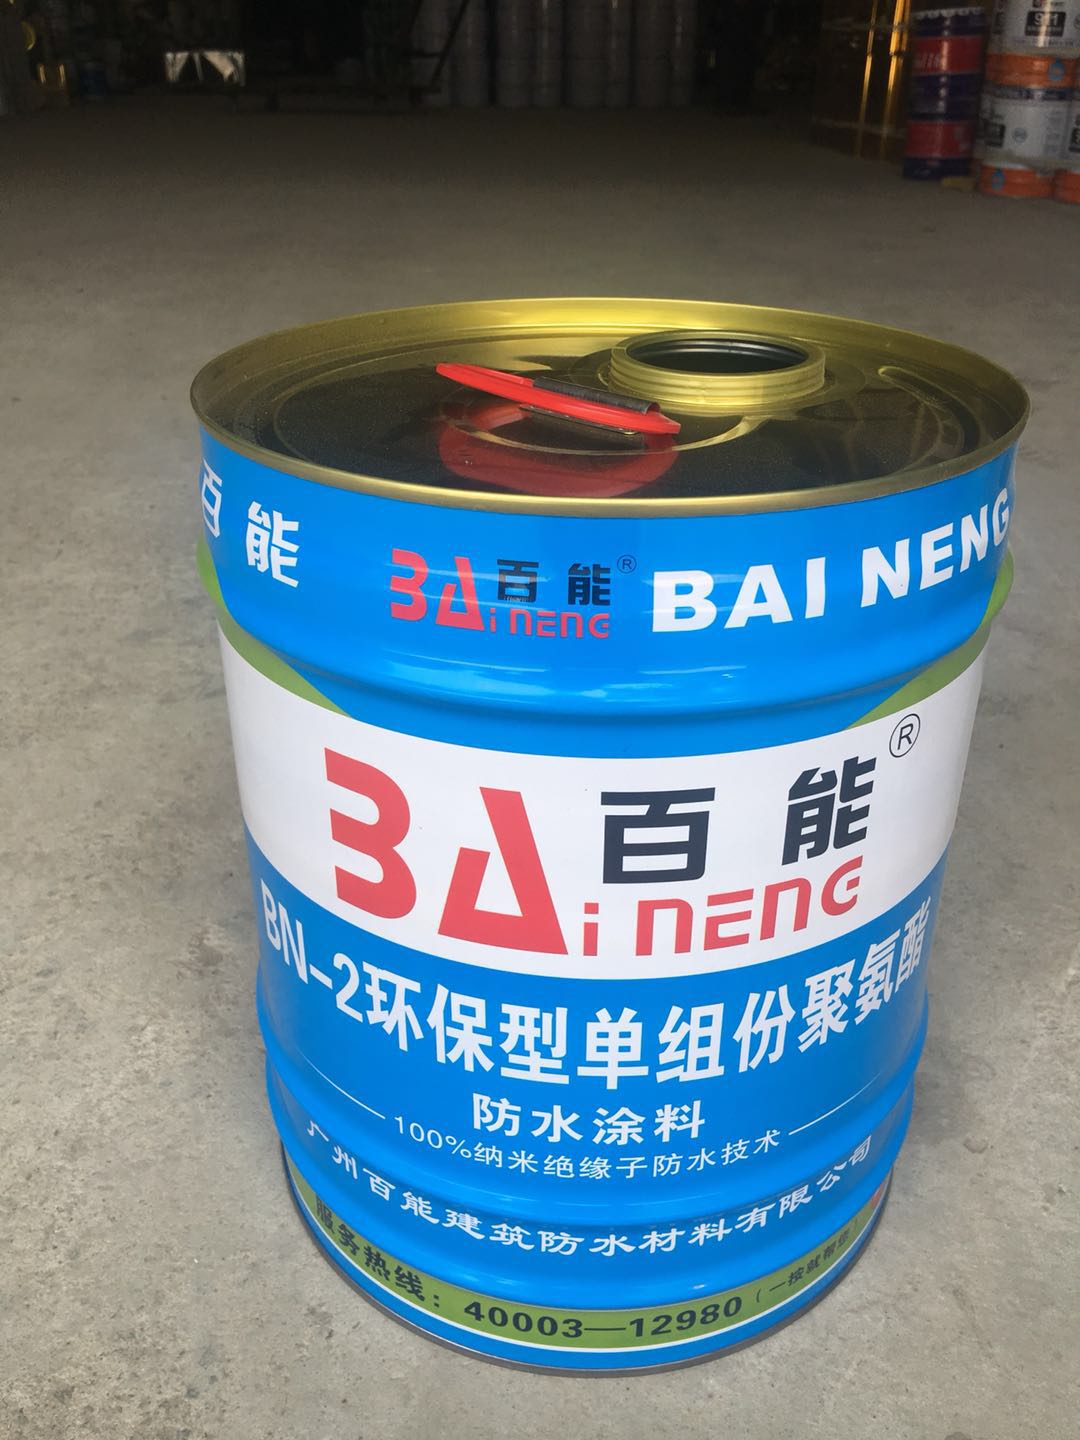 百能BN-2环保型单组份聚氨酯、百能建筑防水官网、